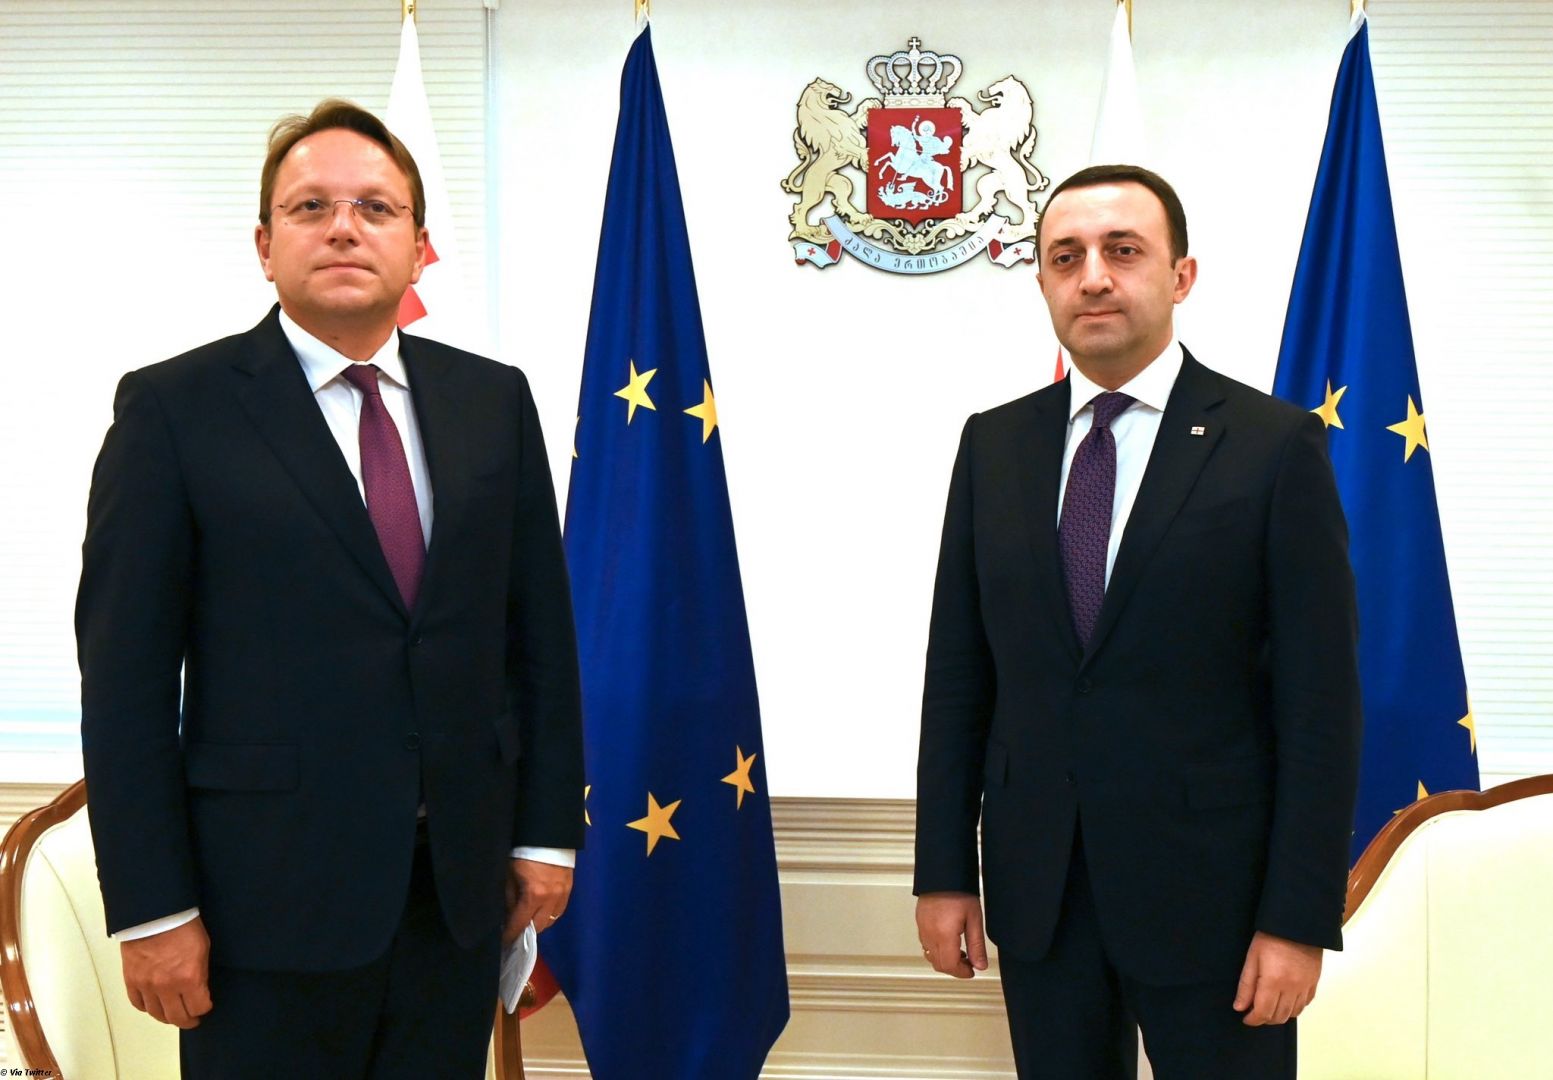 L'Union européenne aidera la Géorgie à renforcer sa situation économique après la crise de la COVID-19